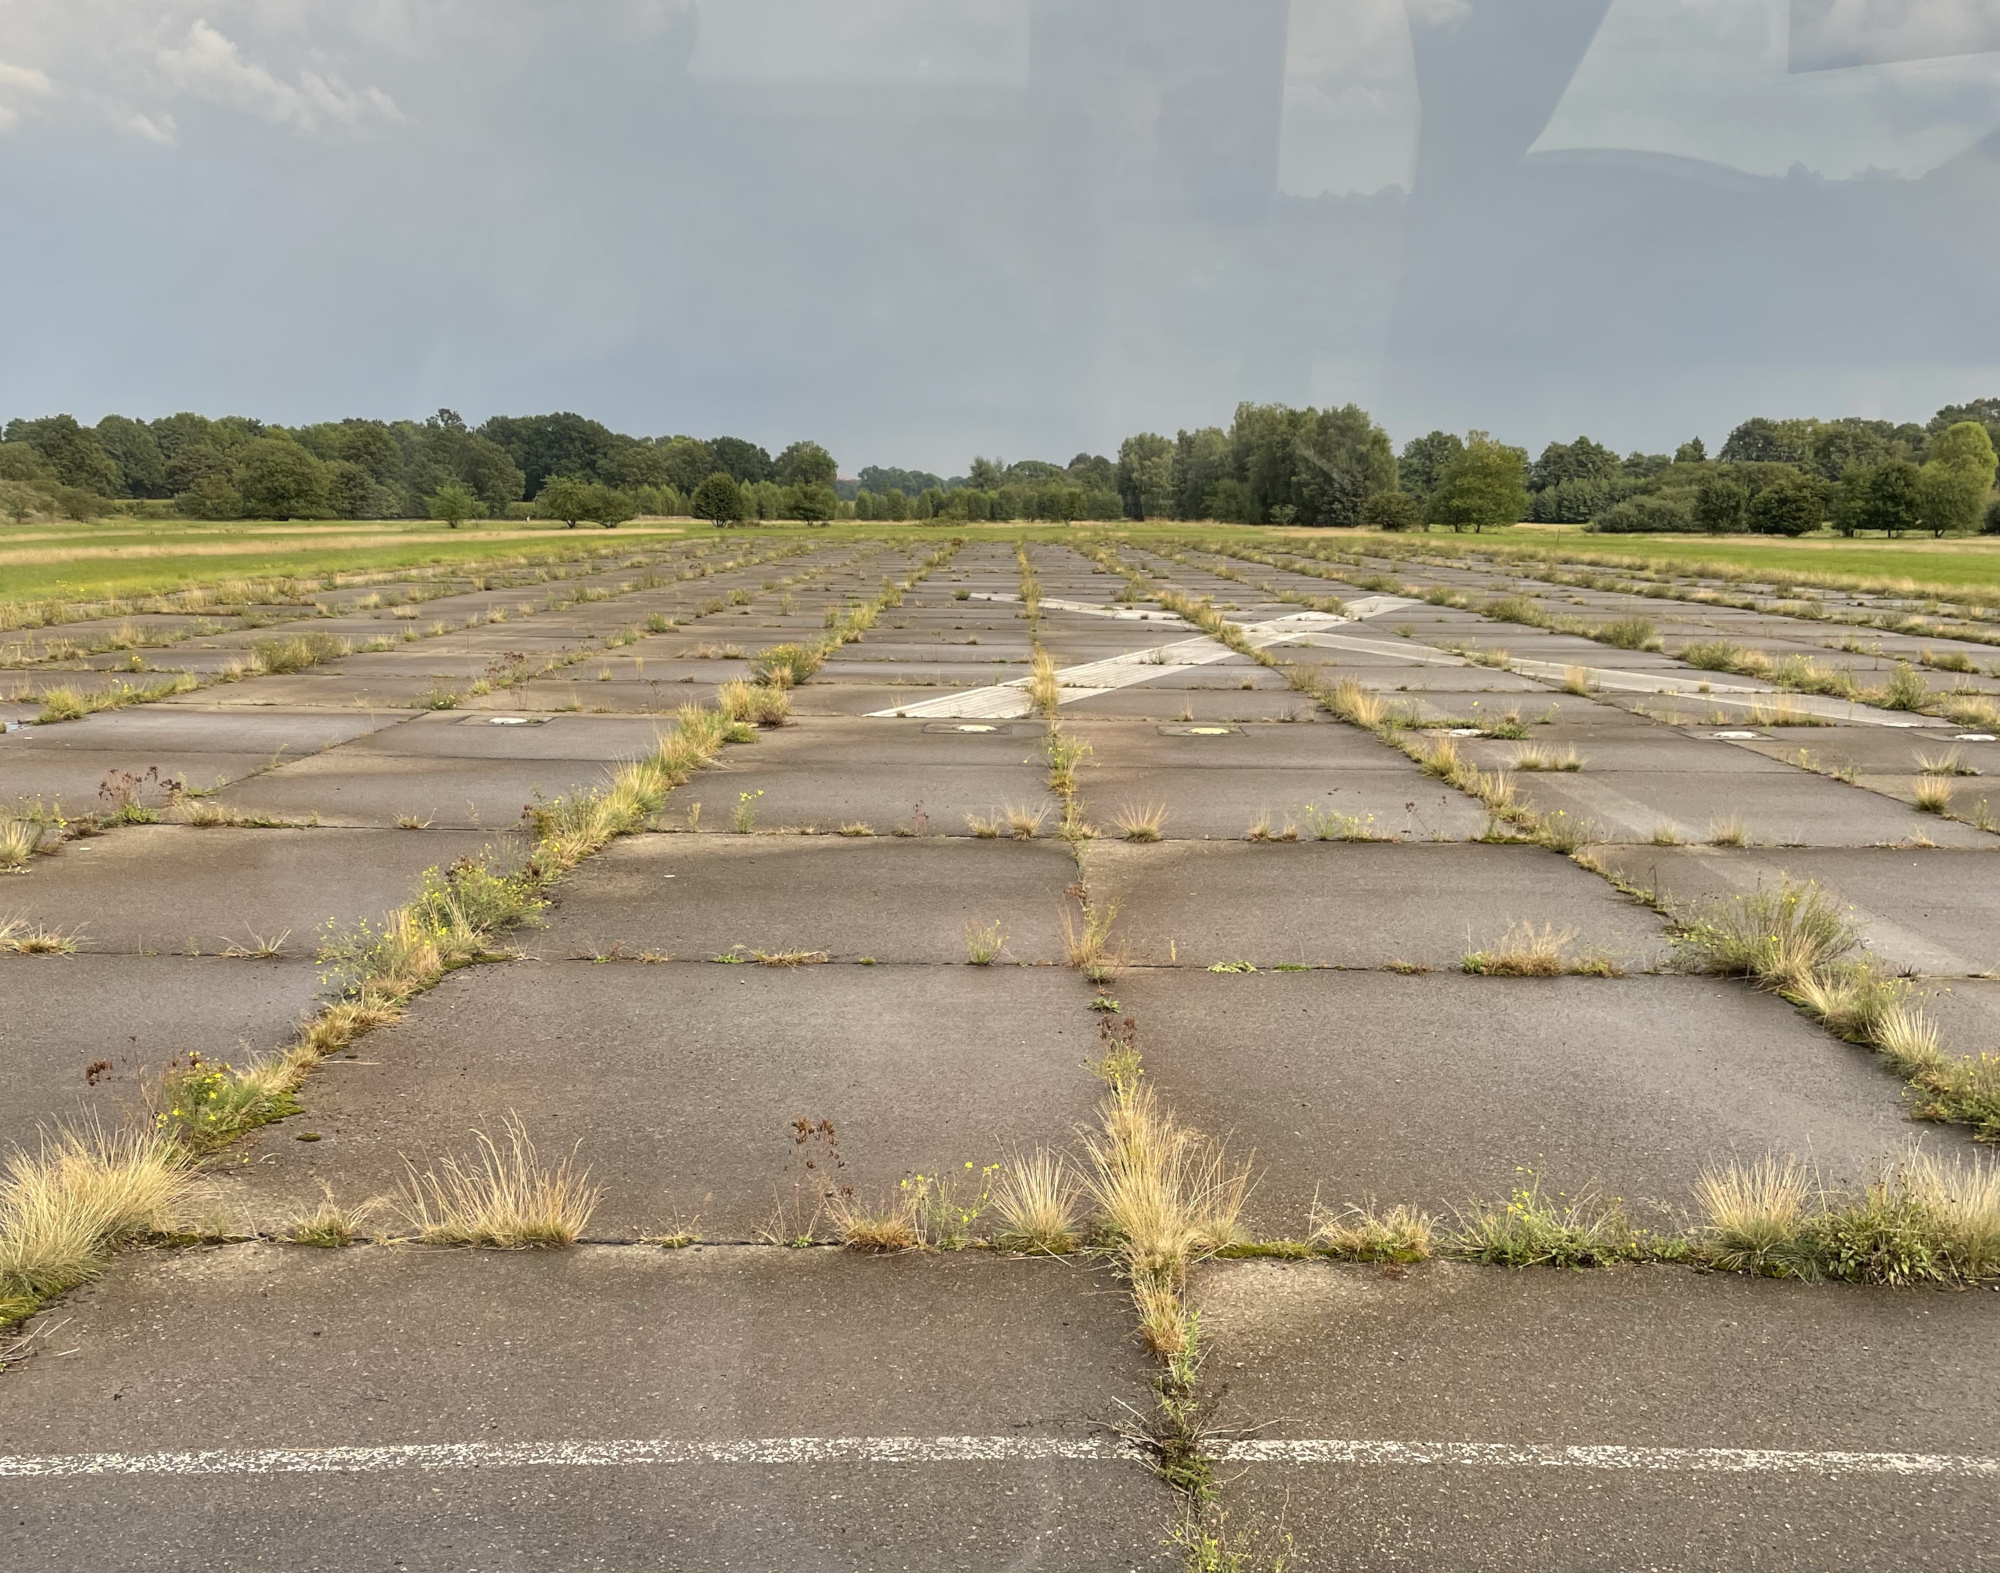 Die versiegelten Flächen der Landebahn könnten zur Erzeugung von Solarenergie genutzt werden.